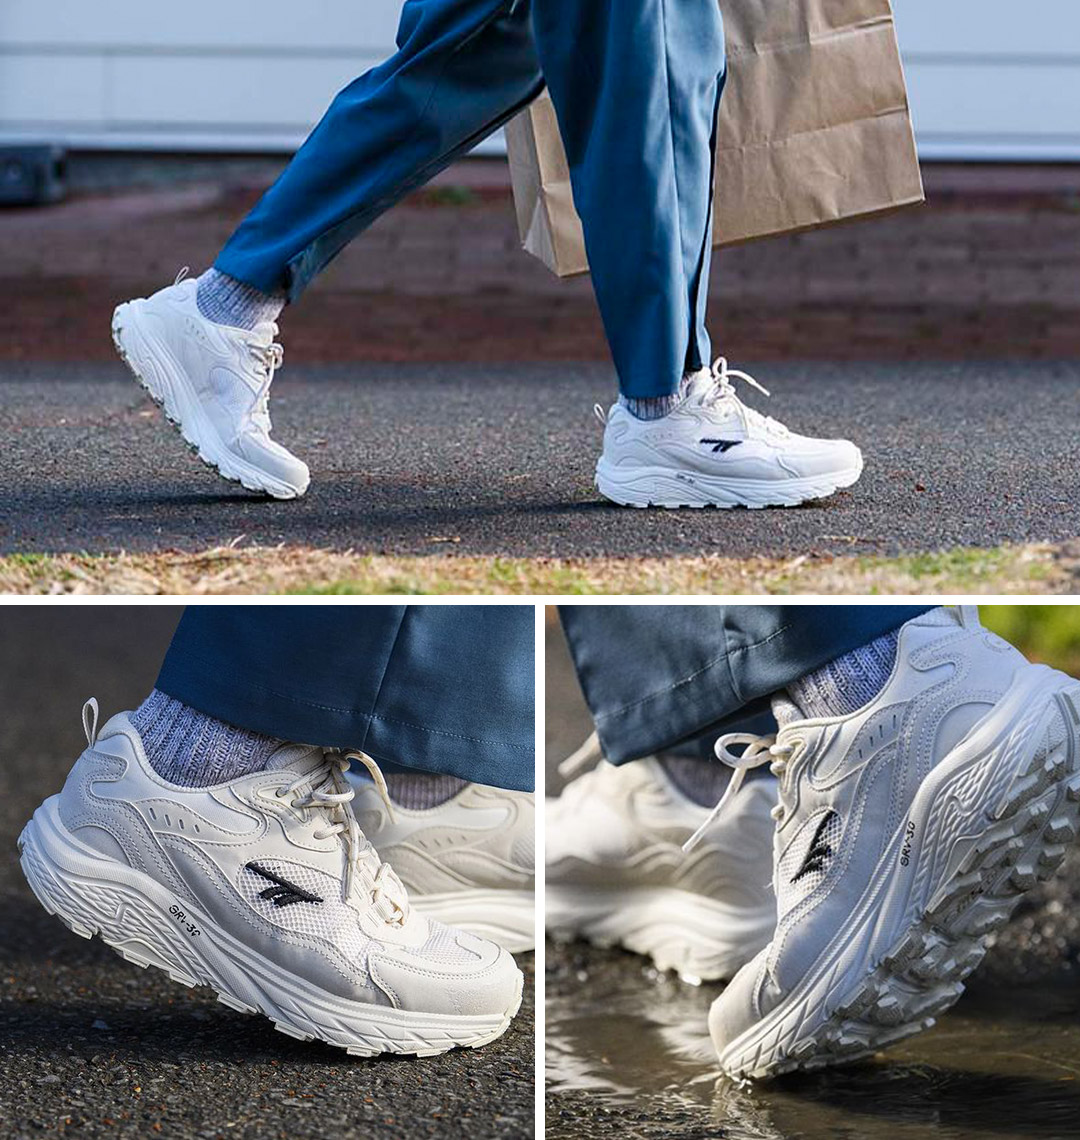 HI-TEC East End waterproof sneakers